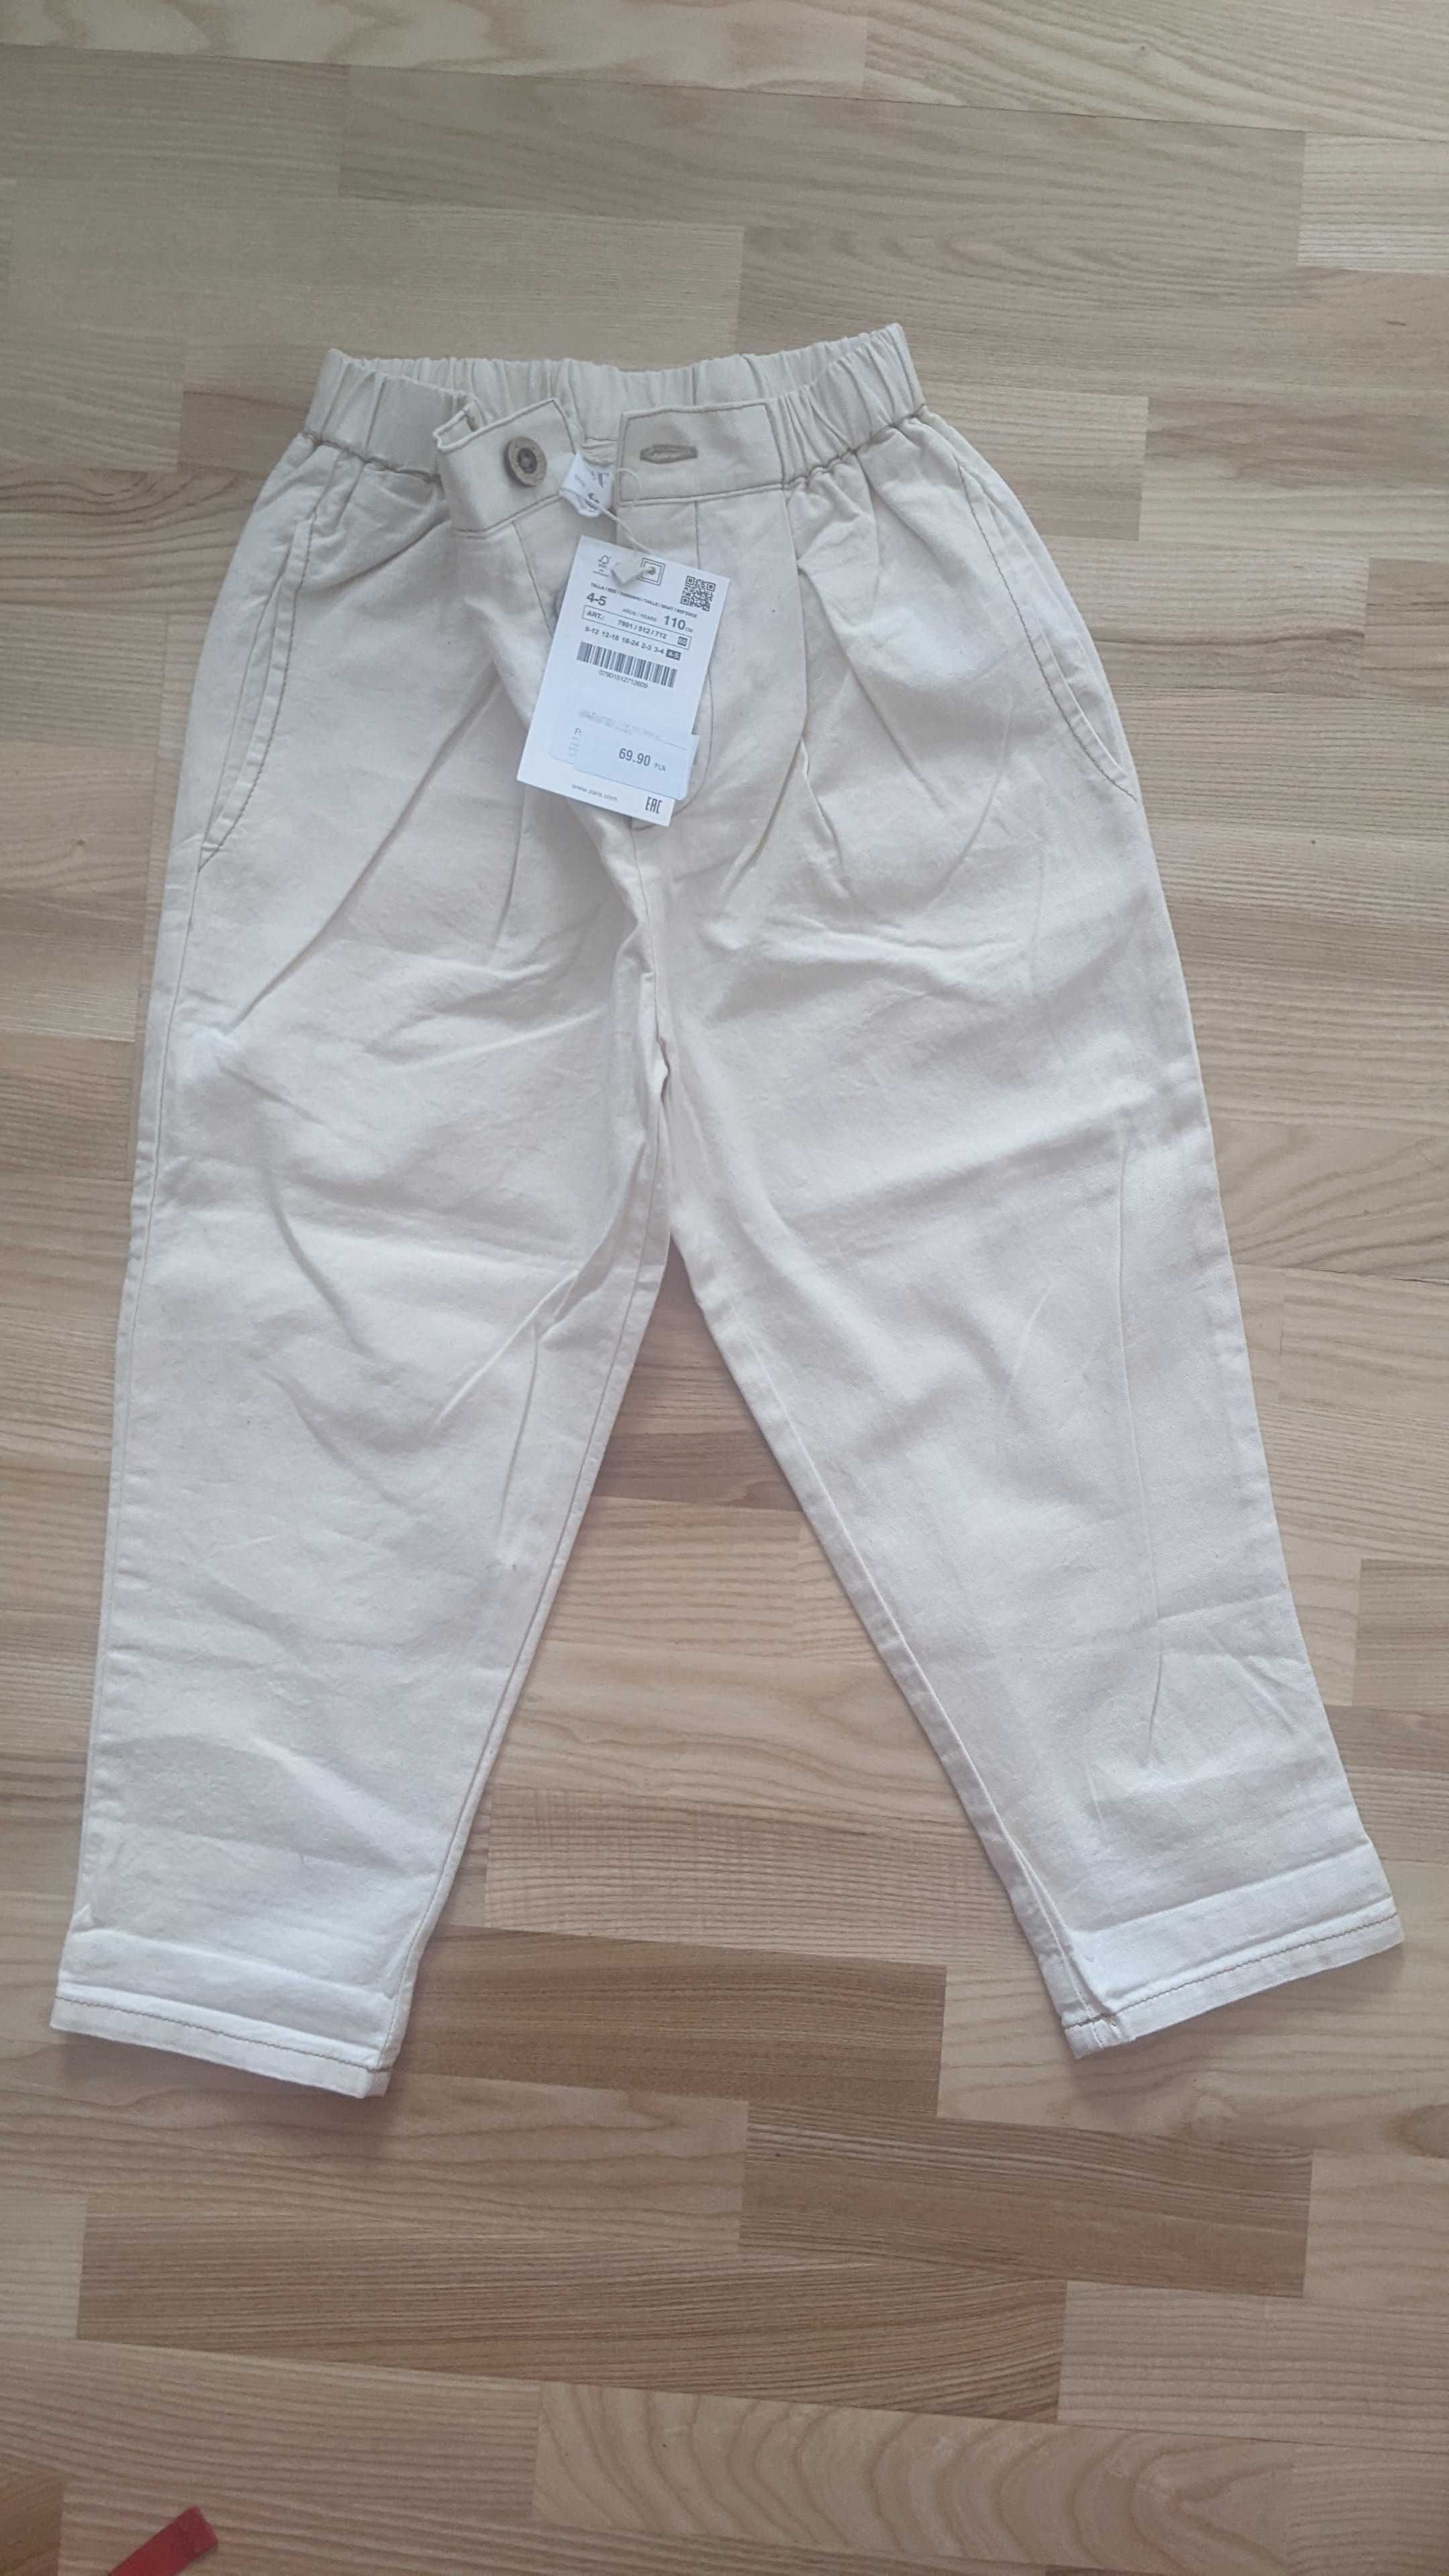 Spodnie Zara chłopiec 4-5 lat 110 cm ; 3 pary spodni